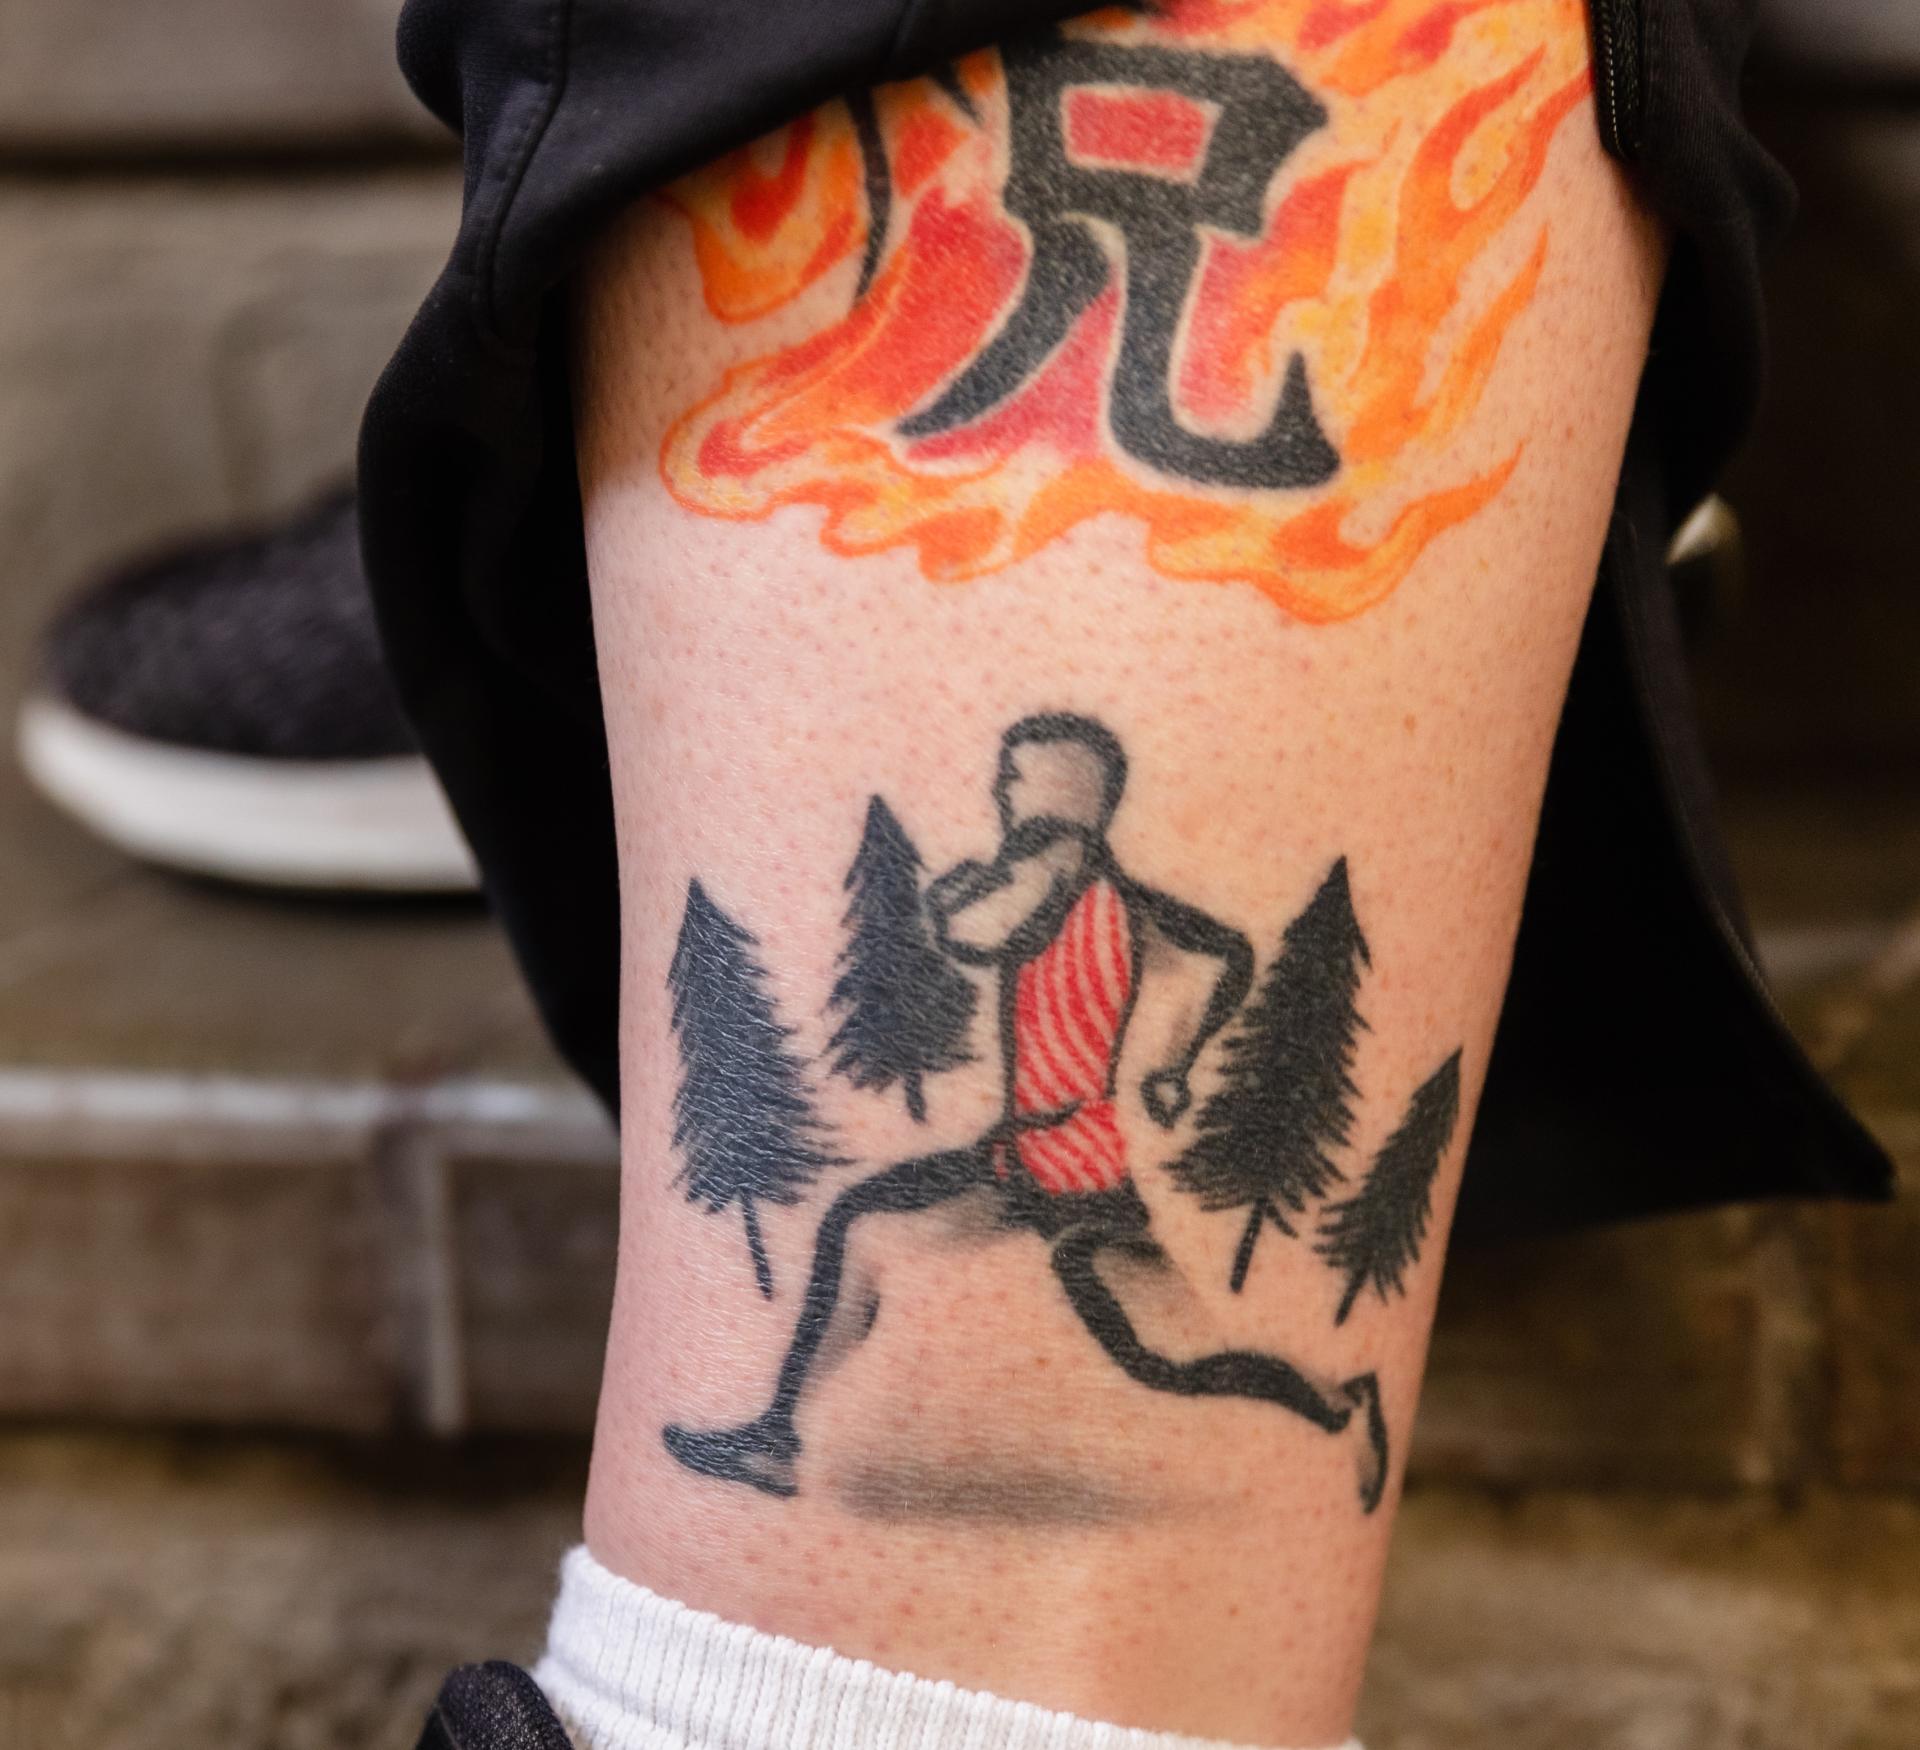 Matt Sinnott's runner silhouette tattoo.